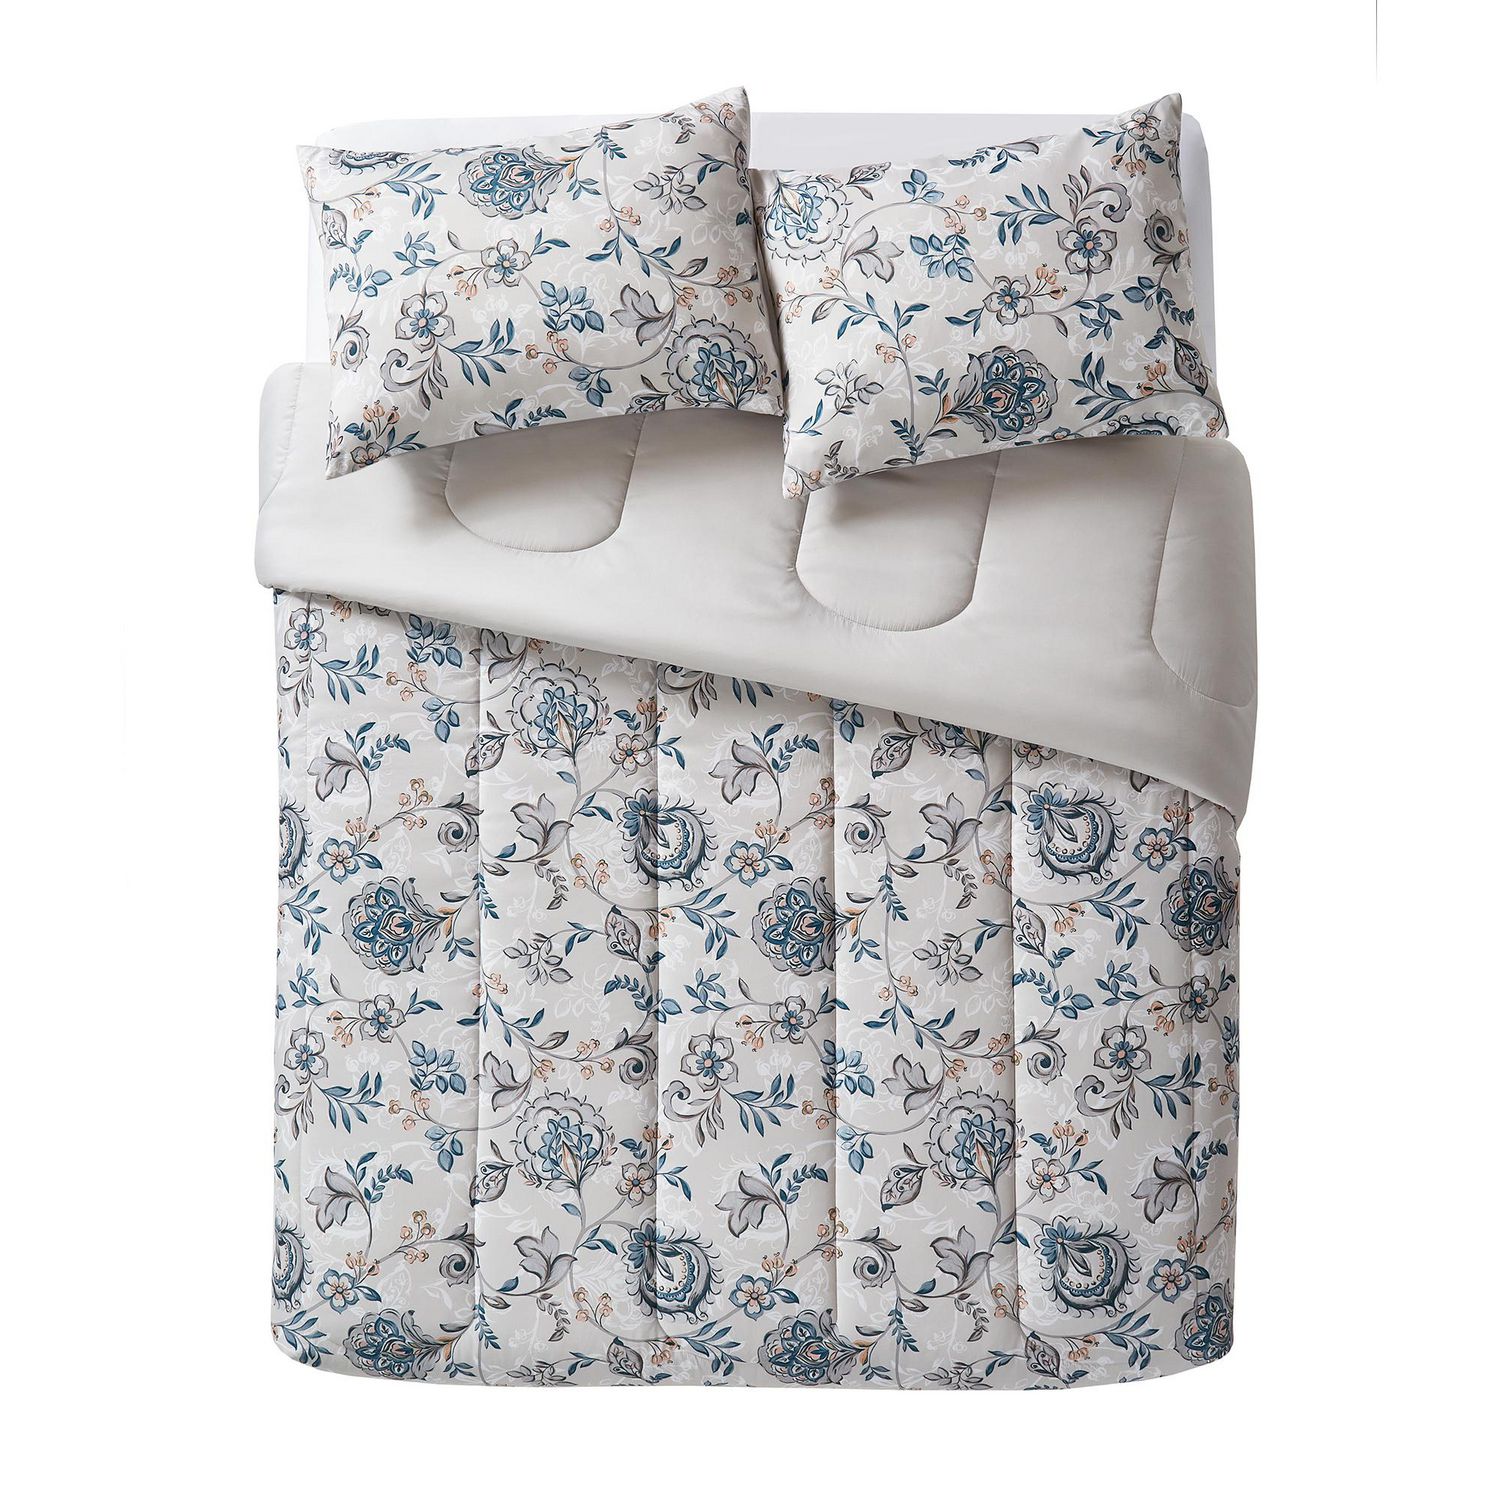 Mainstays Floral Comforter Set, Comforter and Shams 